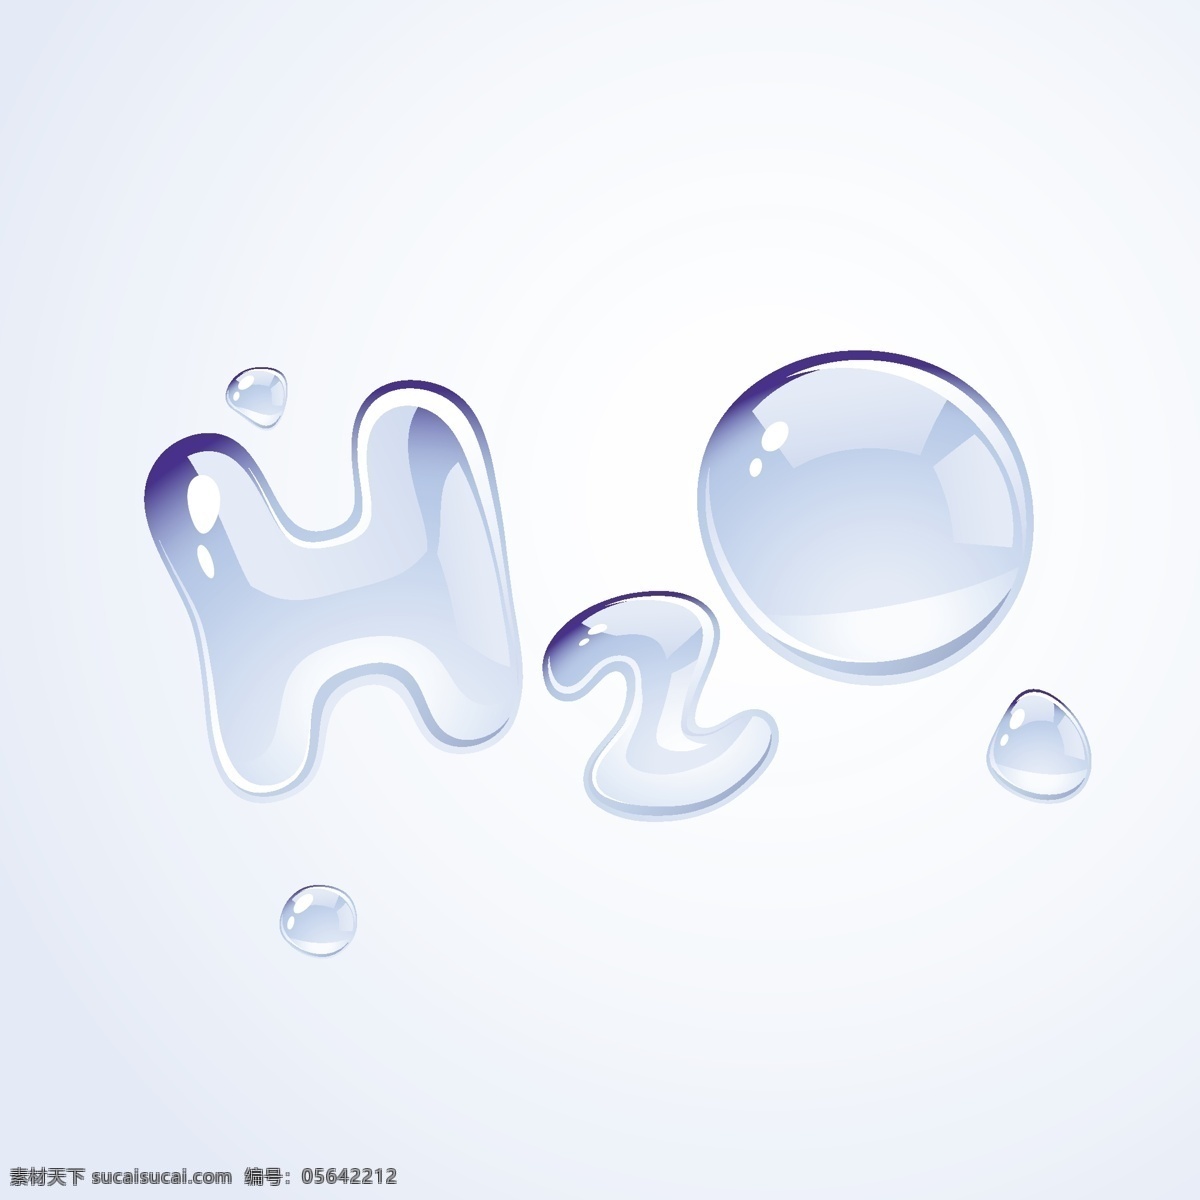 h2o 形状 水滴 矢量素材 水珠 标志图标 其他图标 白色